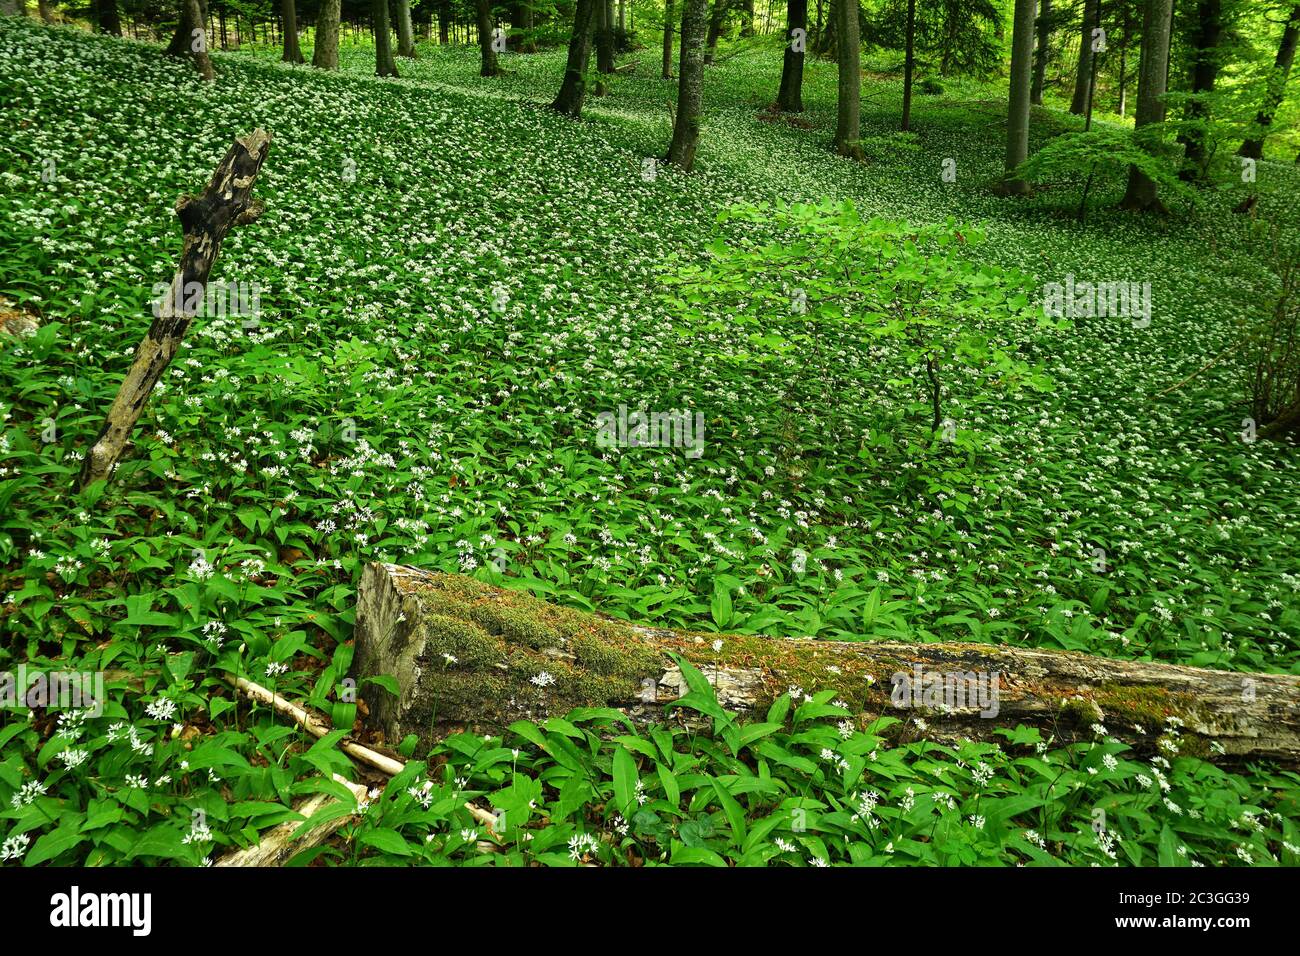 ajo de madera en el bosque de hojas caducas, Foto de stock